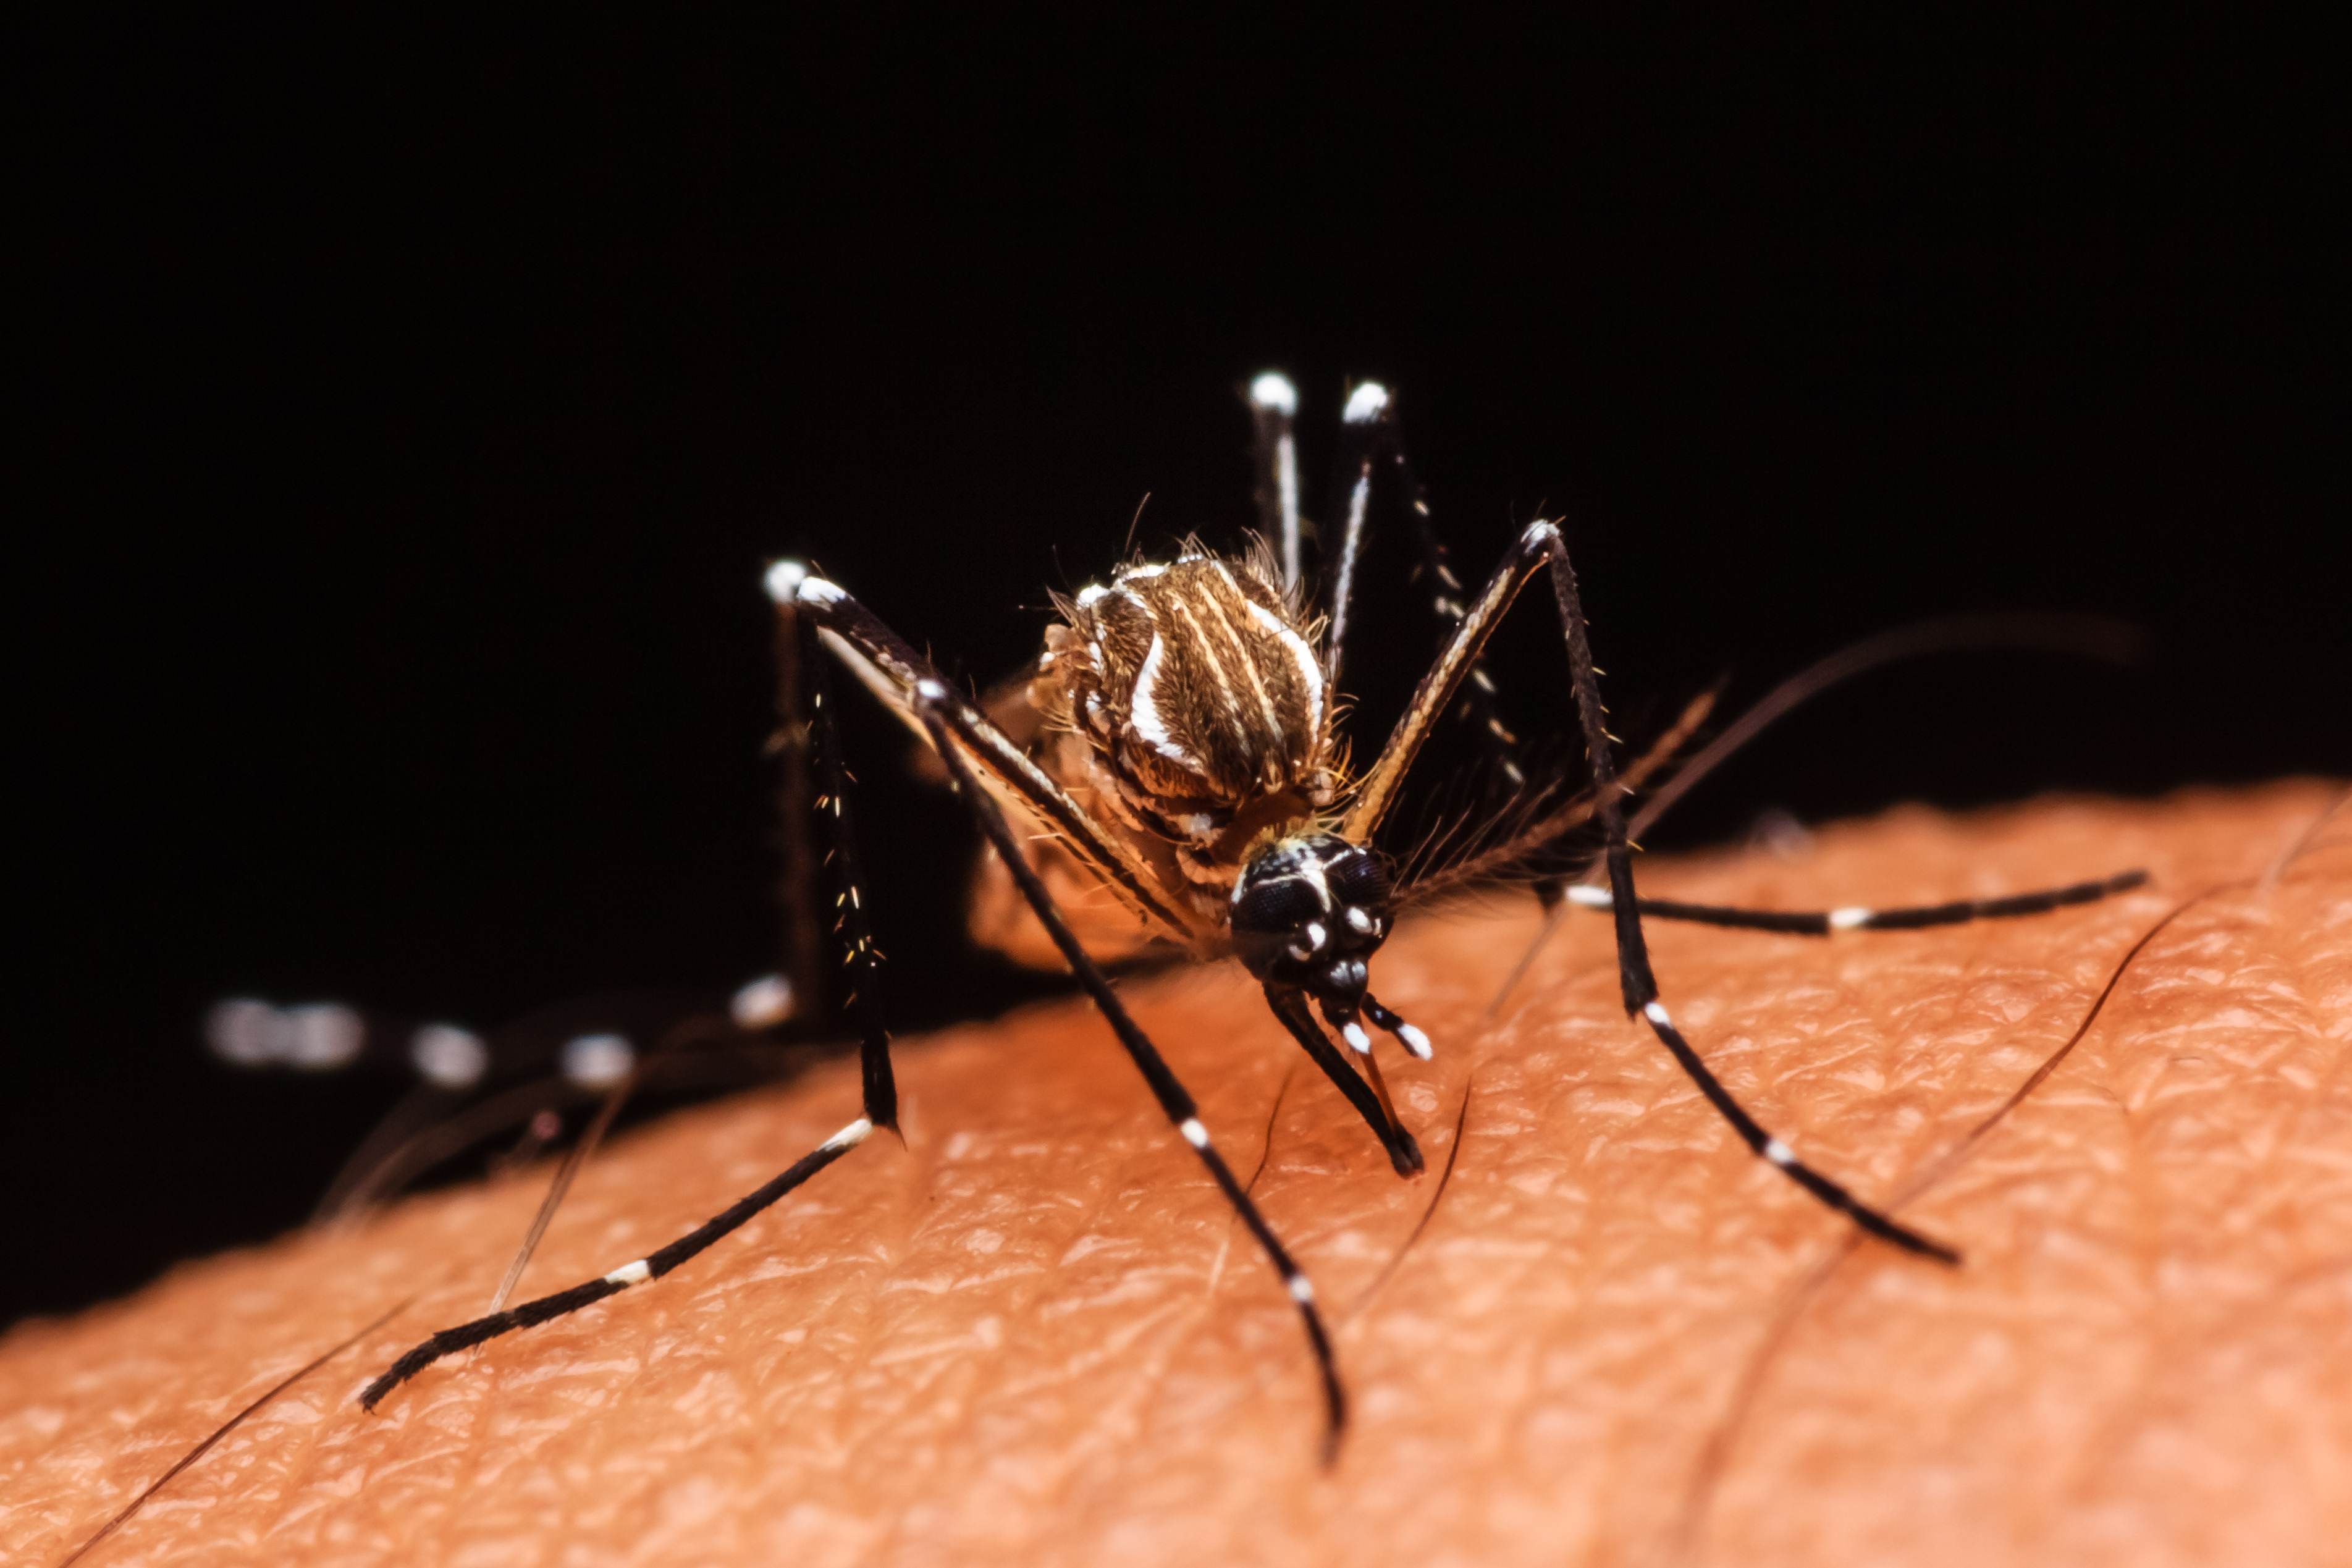     Dengue : la circulation reste stable en Martinique et en Guadeloupe

